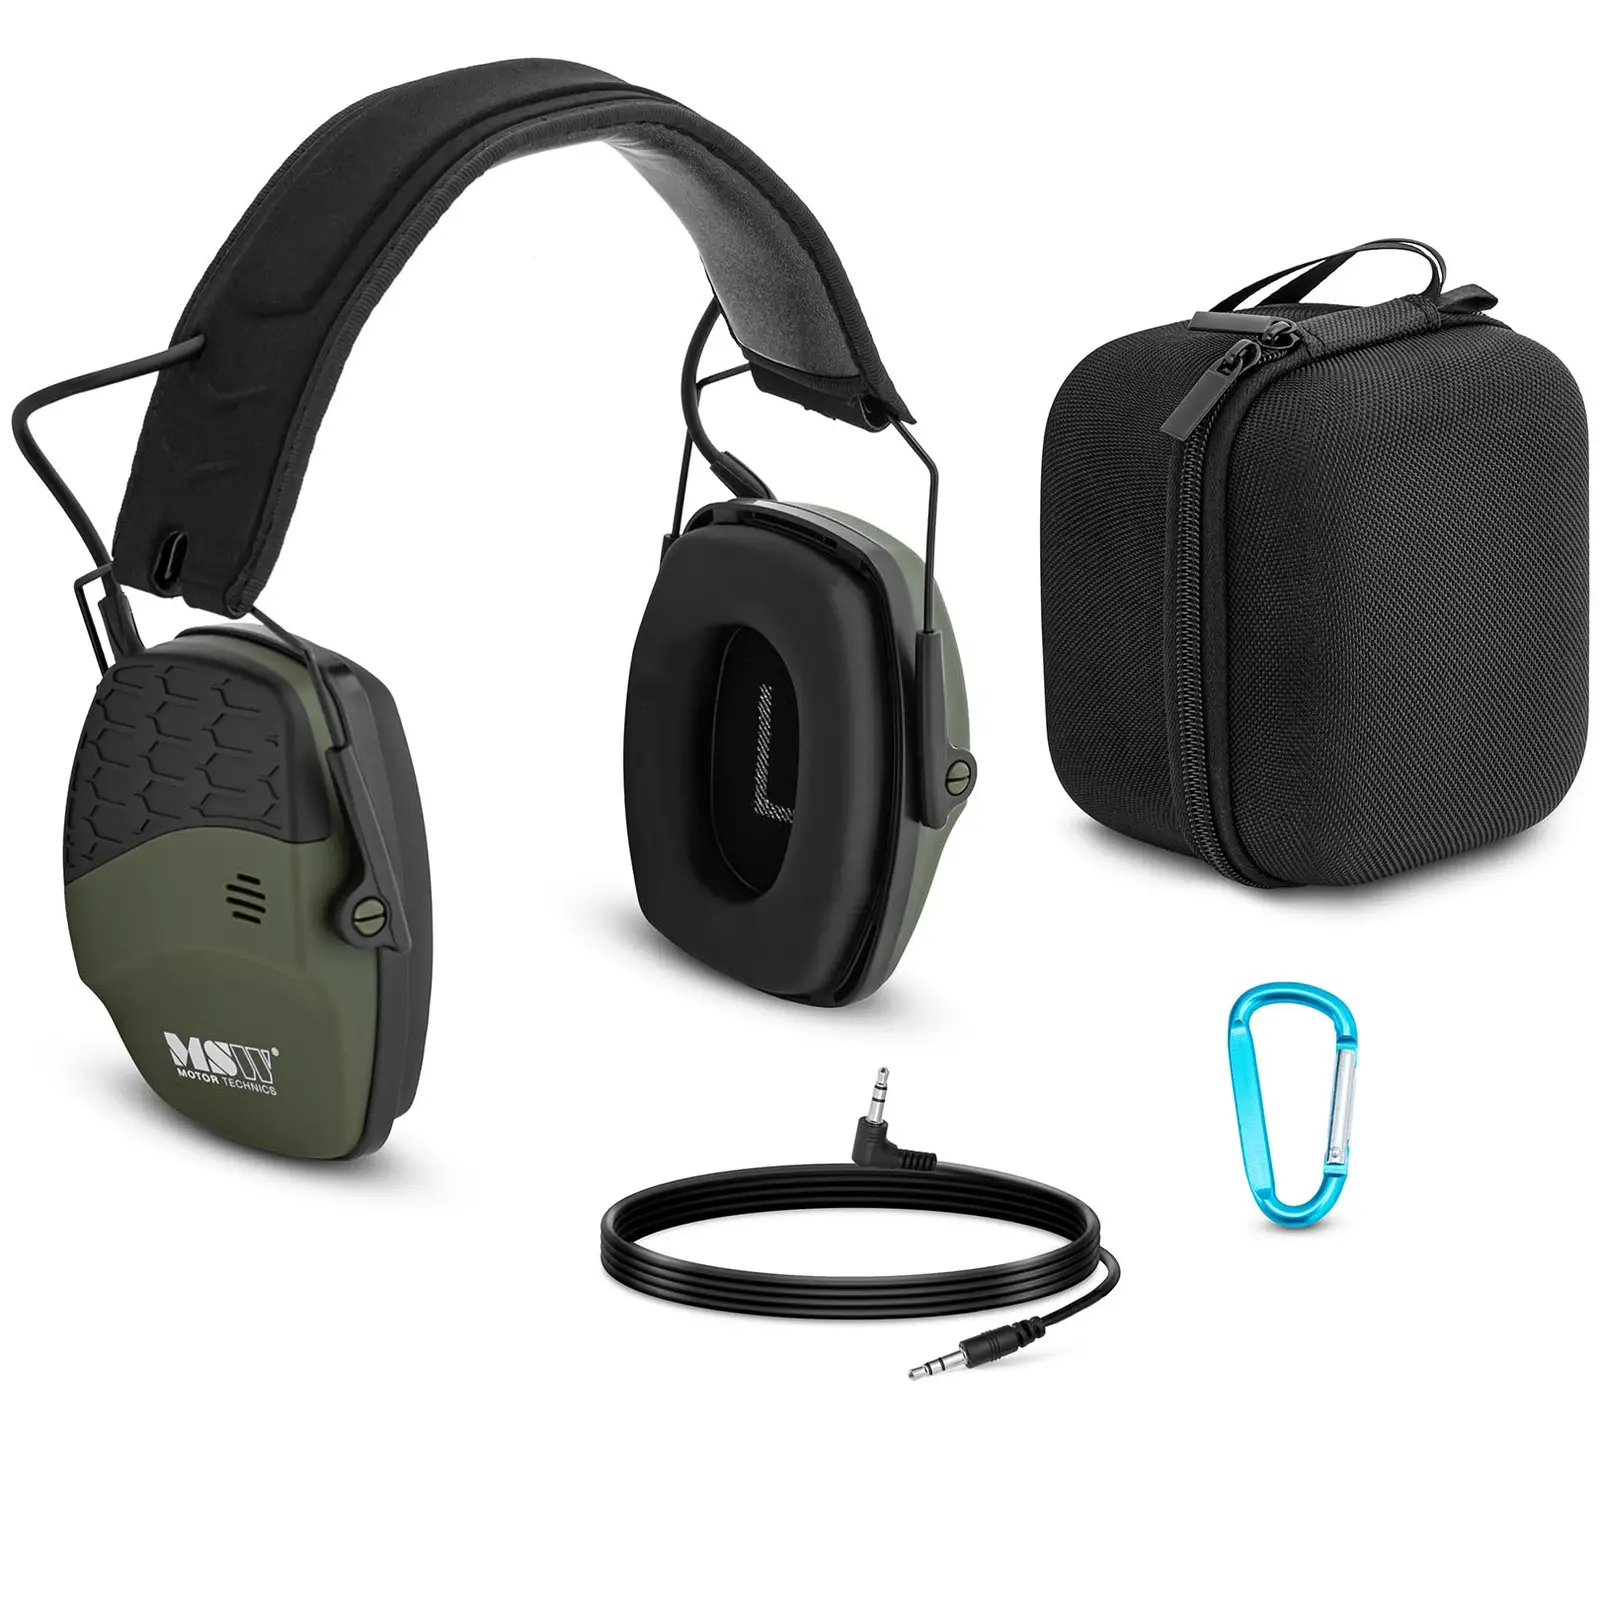 Protección auditiva con Bluetooth - control dinámico de ruido externo - verde